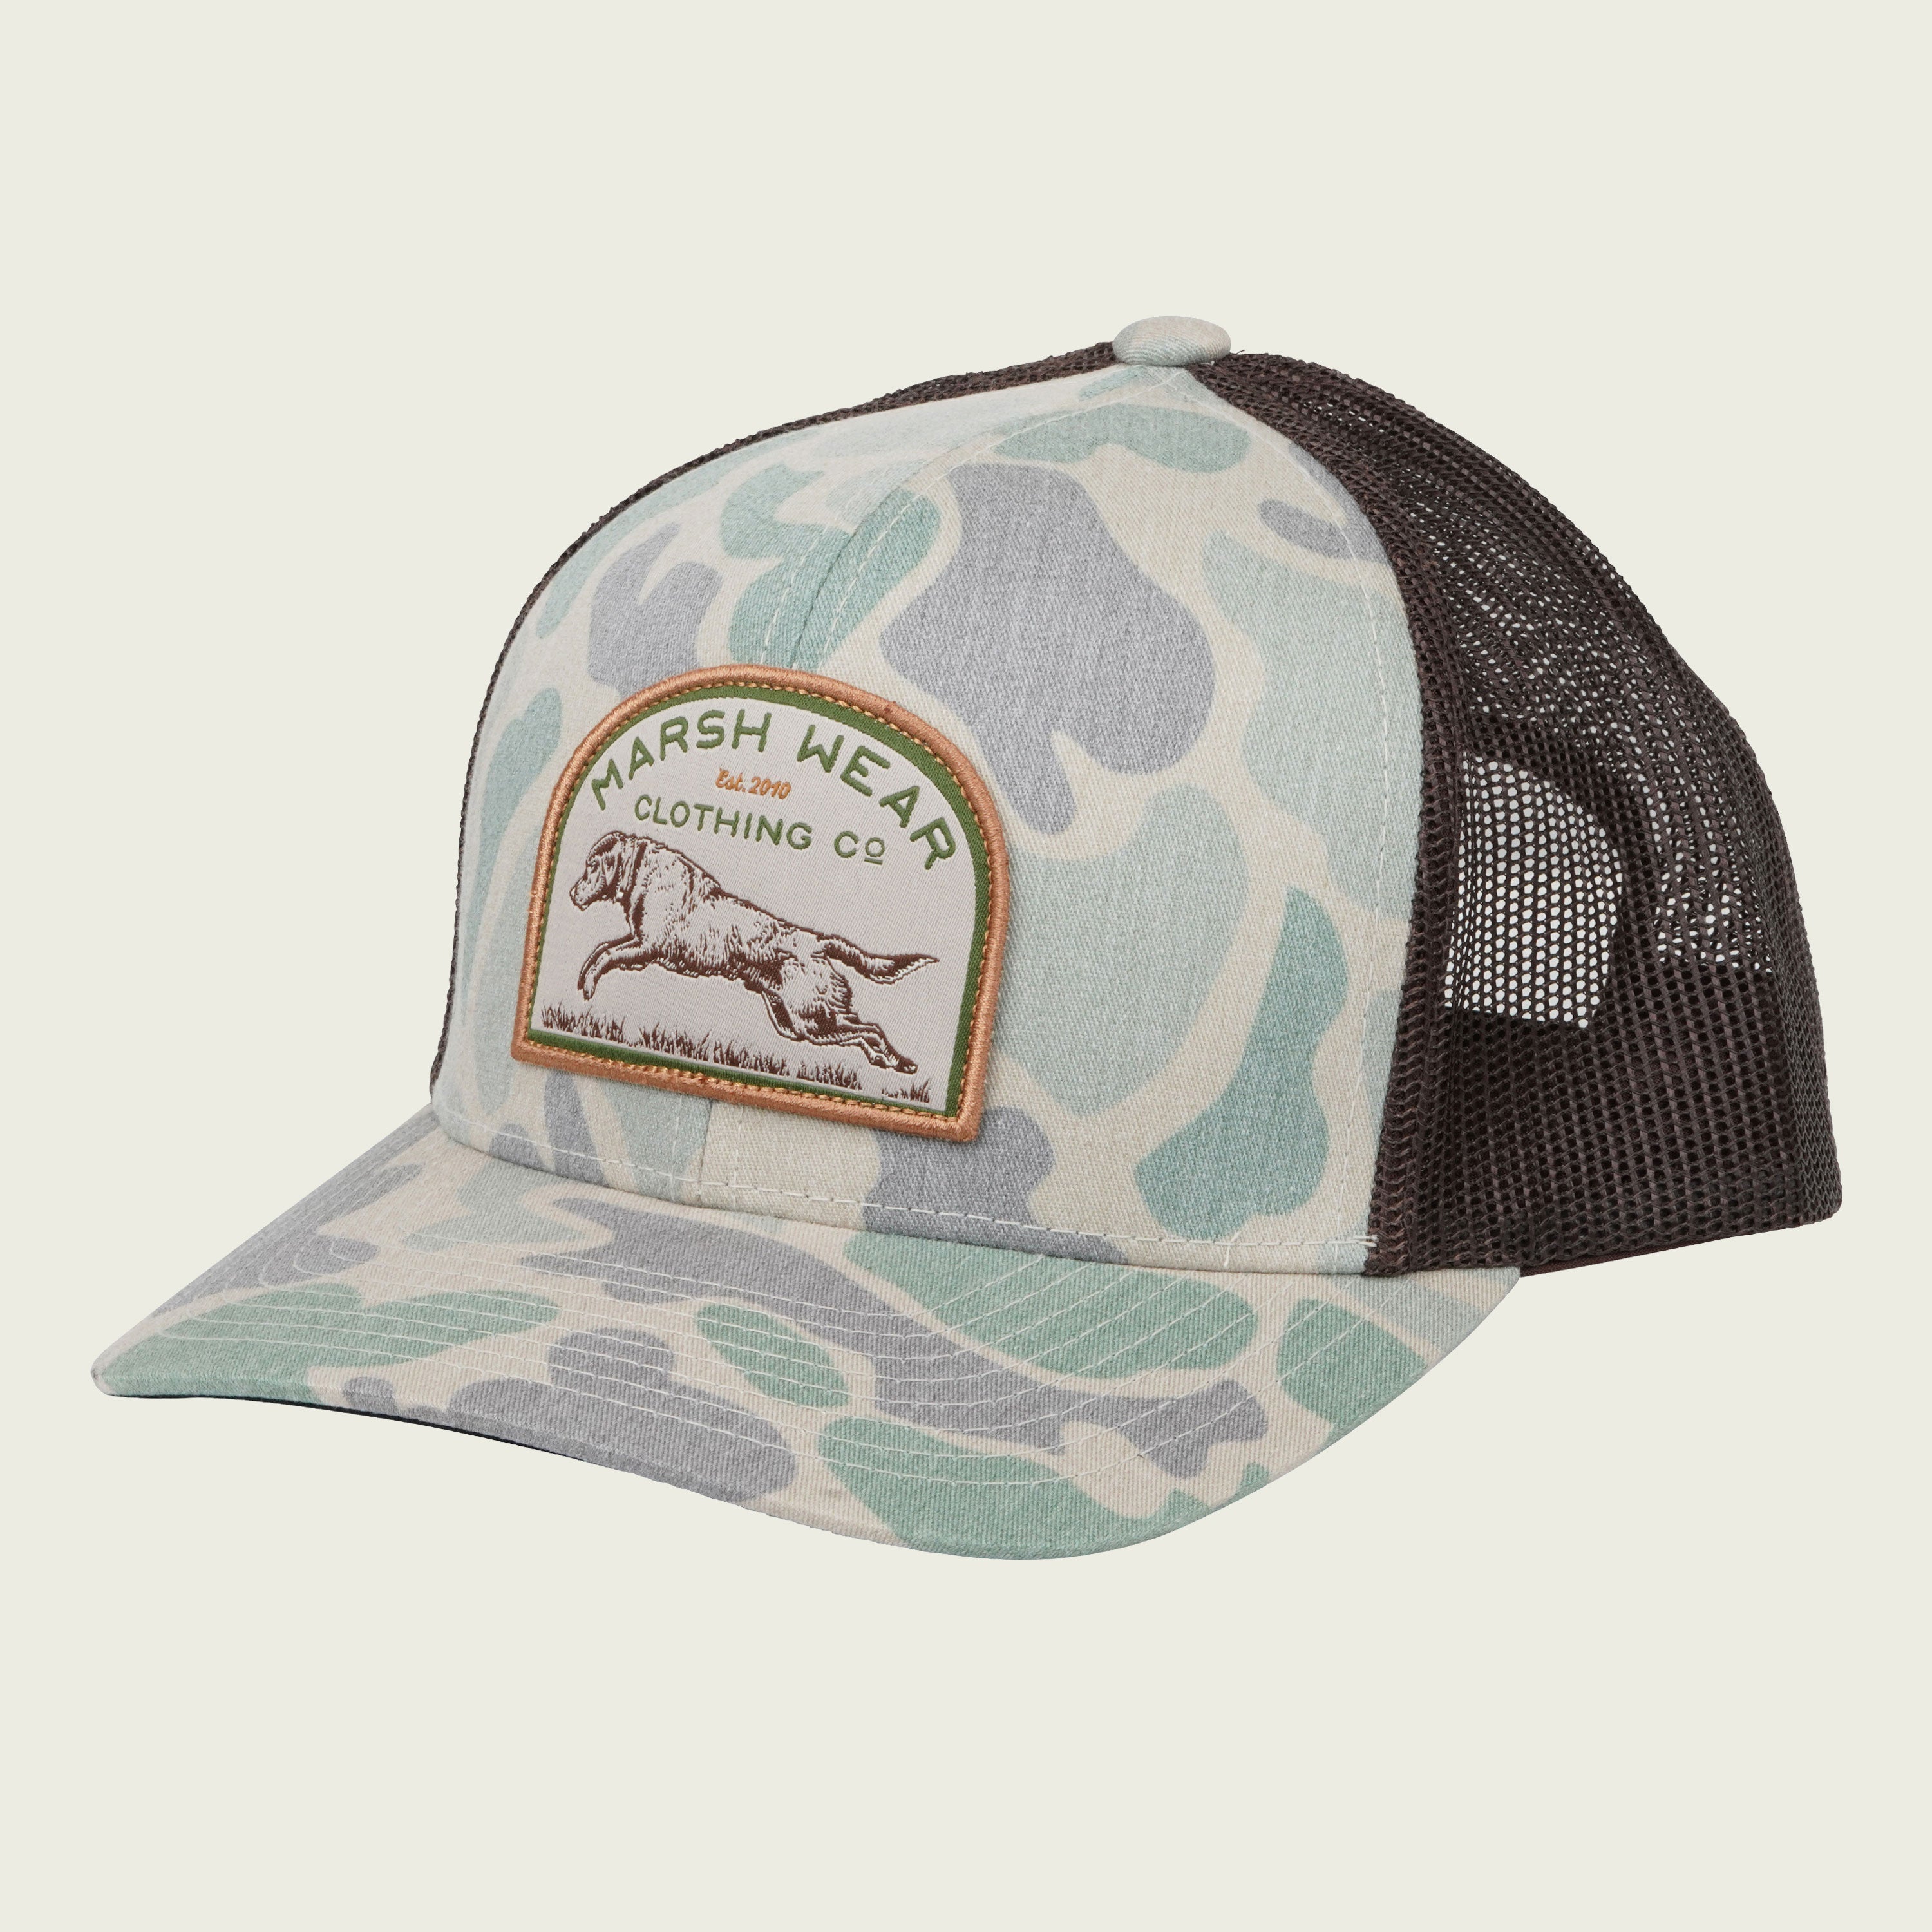 Marsh Wear Green Camo Retrieve Hat